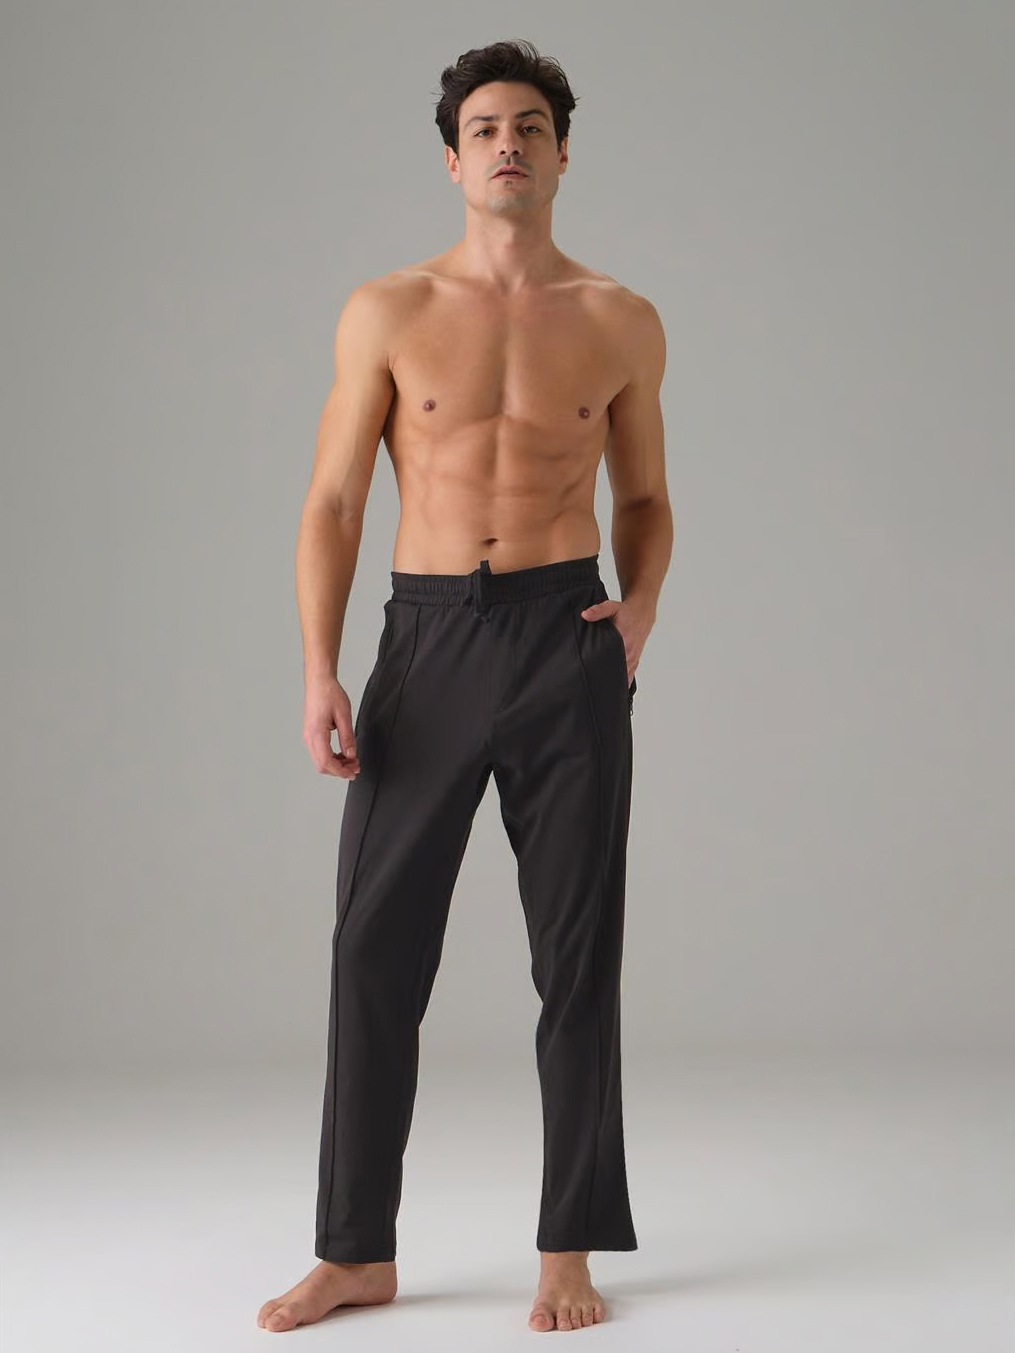 брюки домашние мужские Doreanse 4933 чёрные